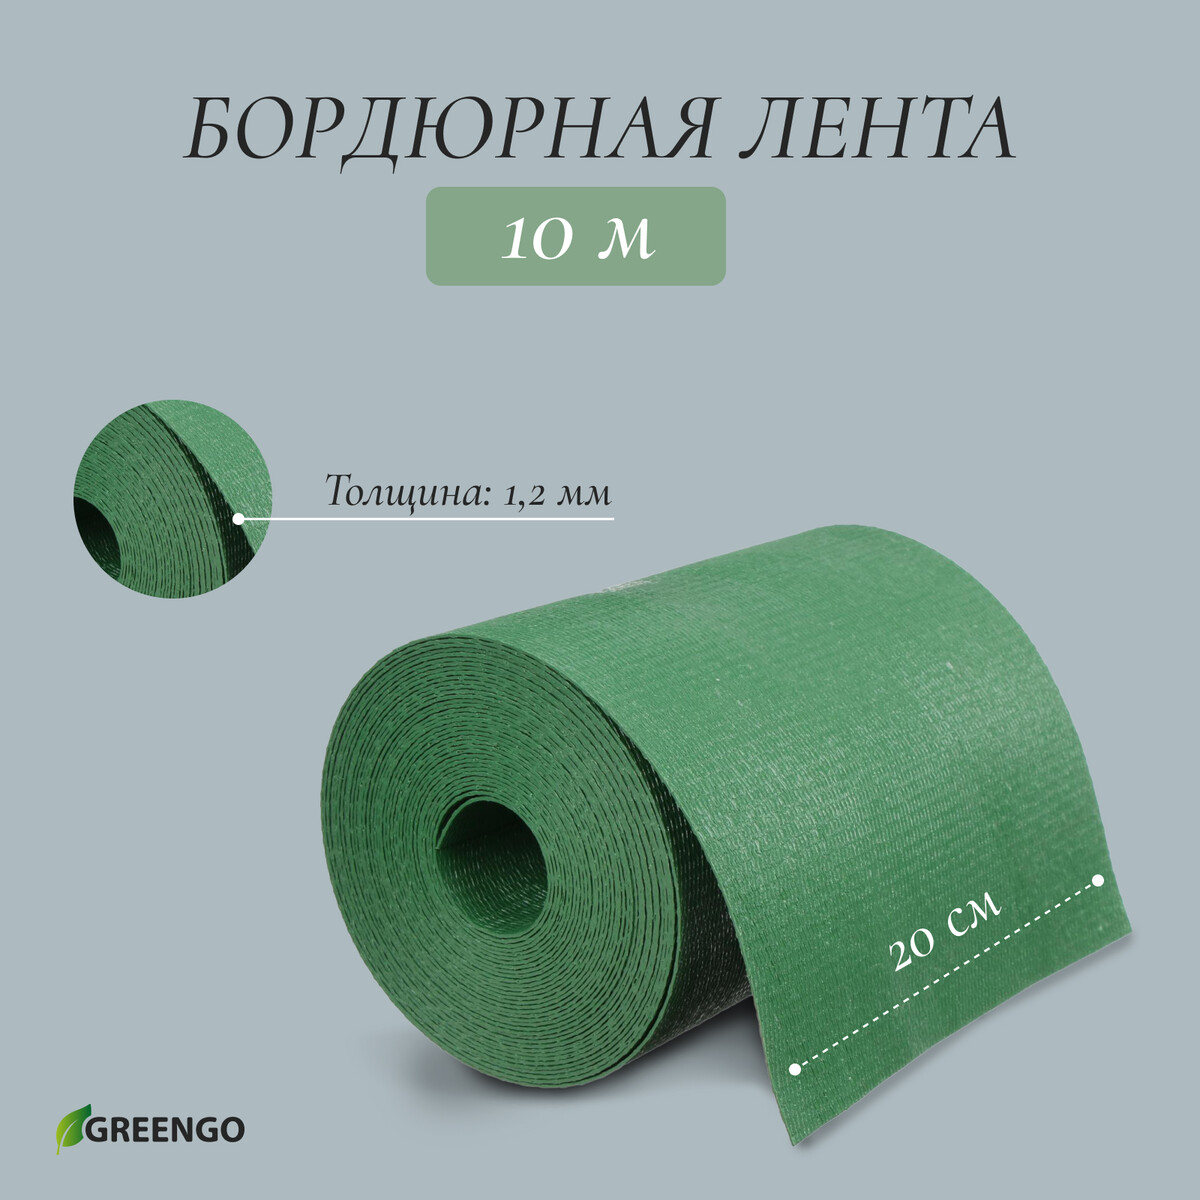 Лента бордюрная, 0.2 × 10 м, толщина 1.2 мм, пластиковая, зеленая, greengo лента бордюрная 0 3 × 10 м толщина 1 2 мм пластиковая зеленая greengo